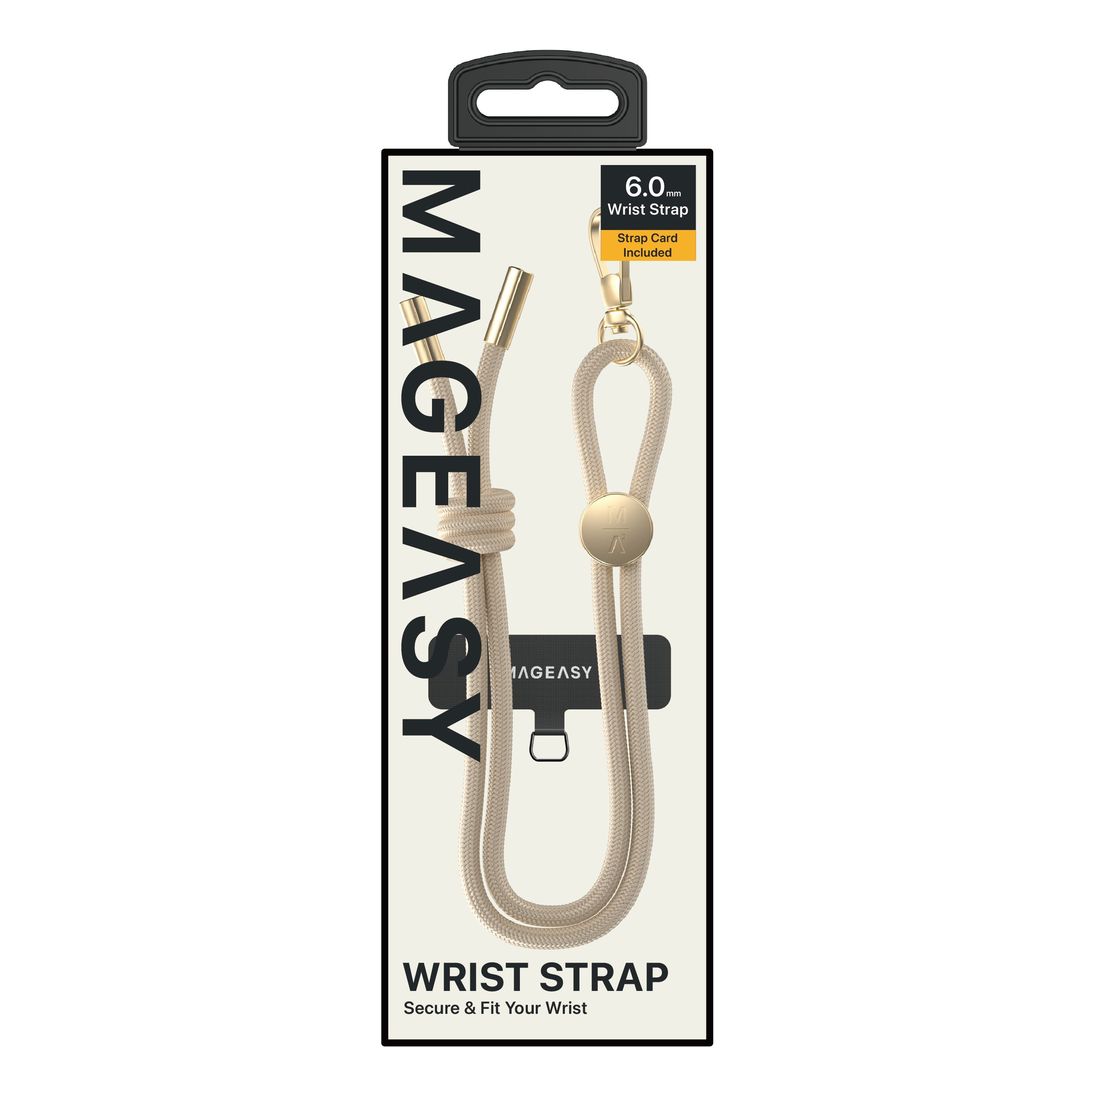 Mageasy Wrist Strap & Strap Card - 6mm - Beige